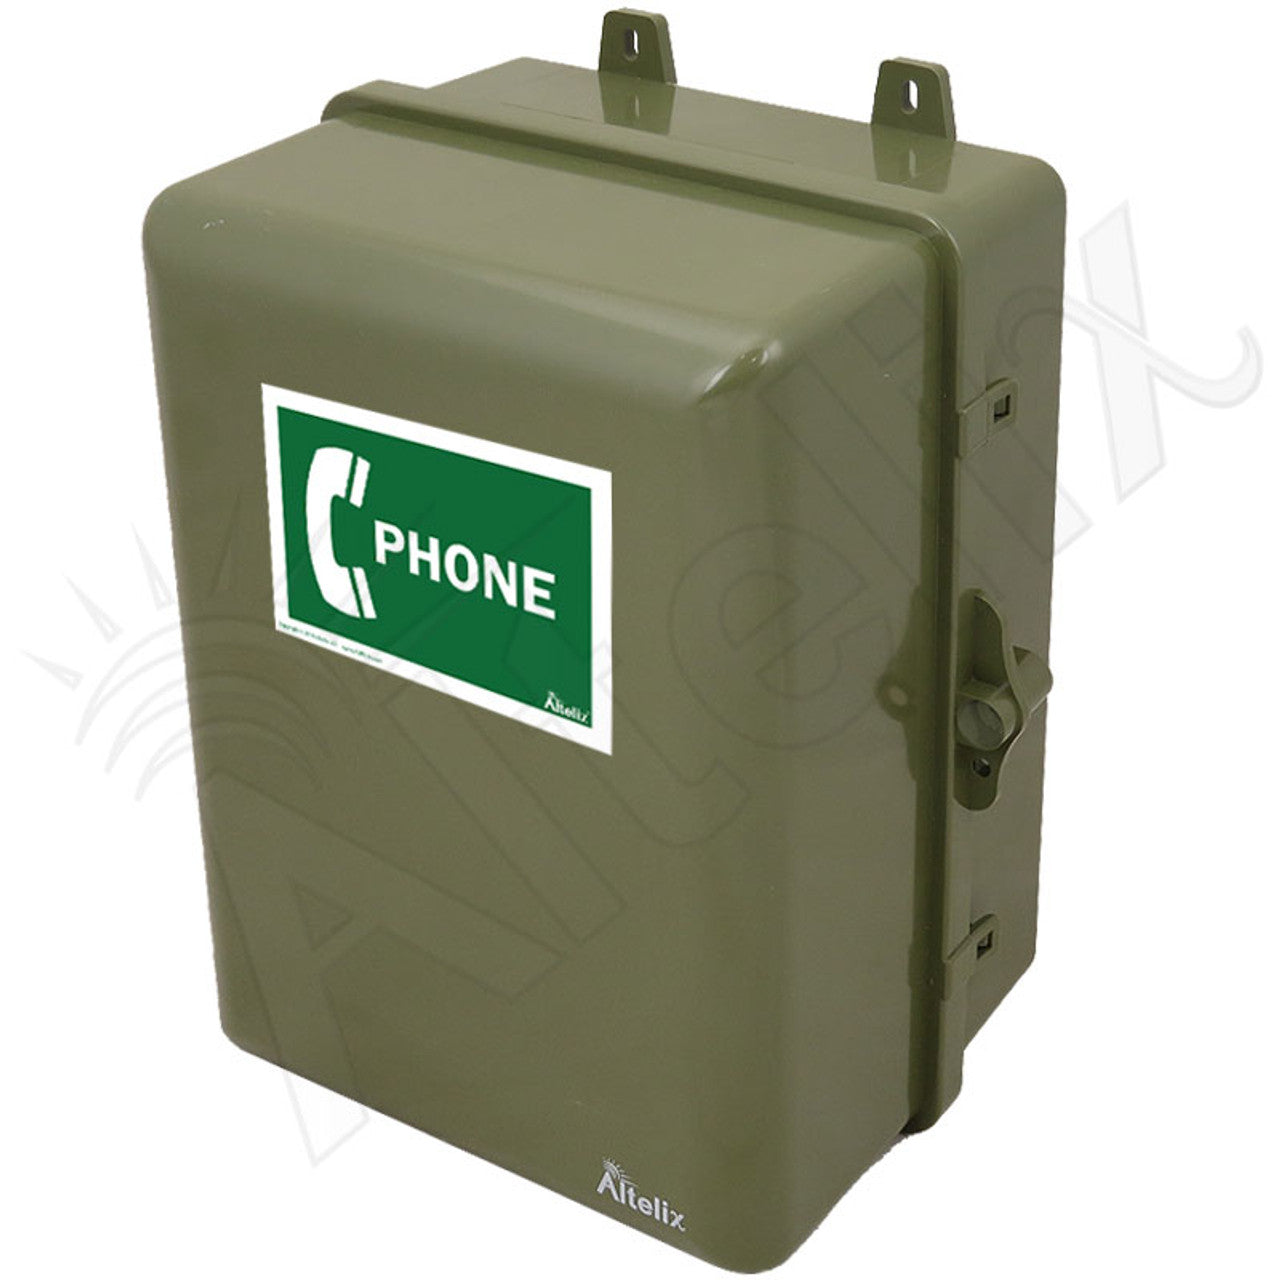 Buy green Altelix 12x9x7 IP66 NEMA 4X Outdoor Weatherproof Phone Call Box with Phone Label